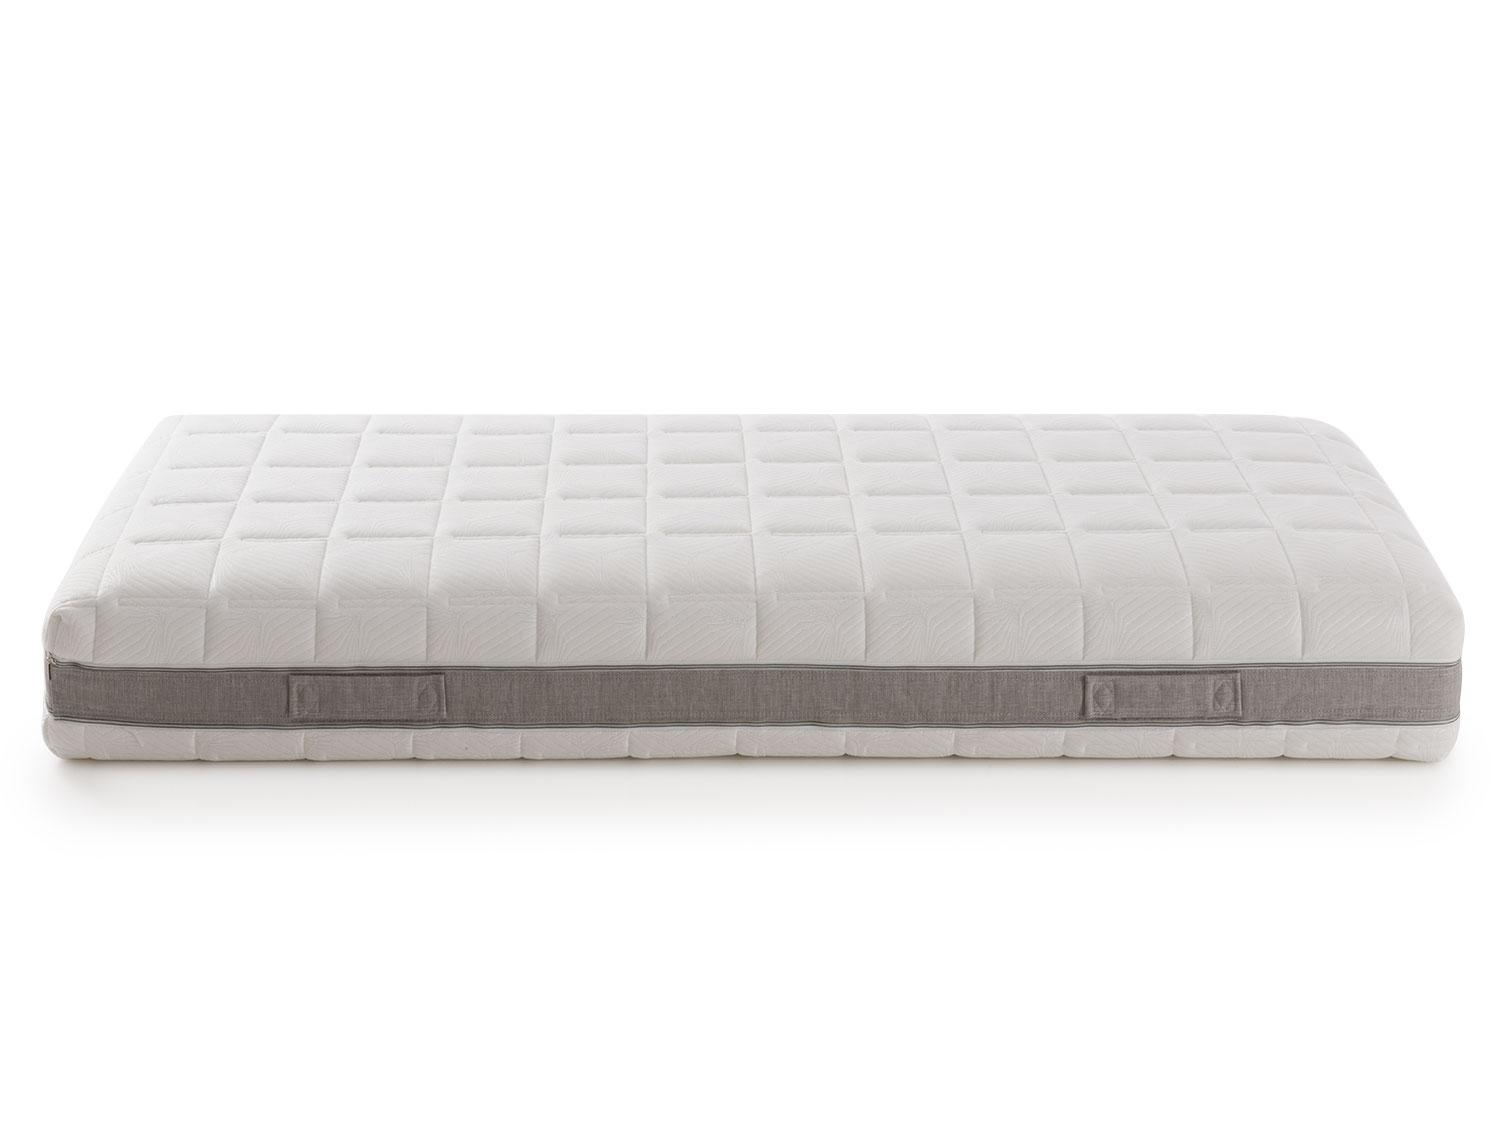 flextech memory foam queen mattress review